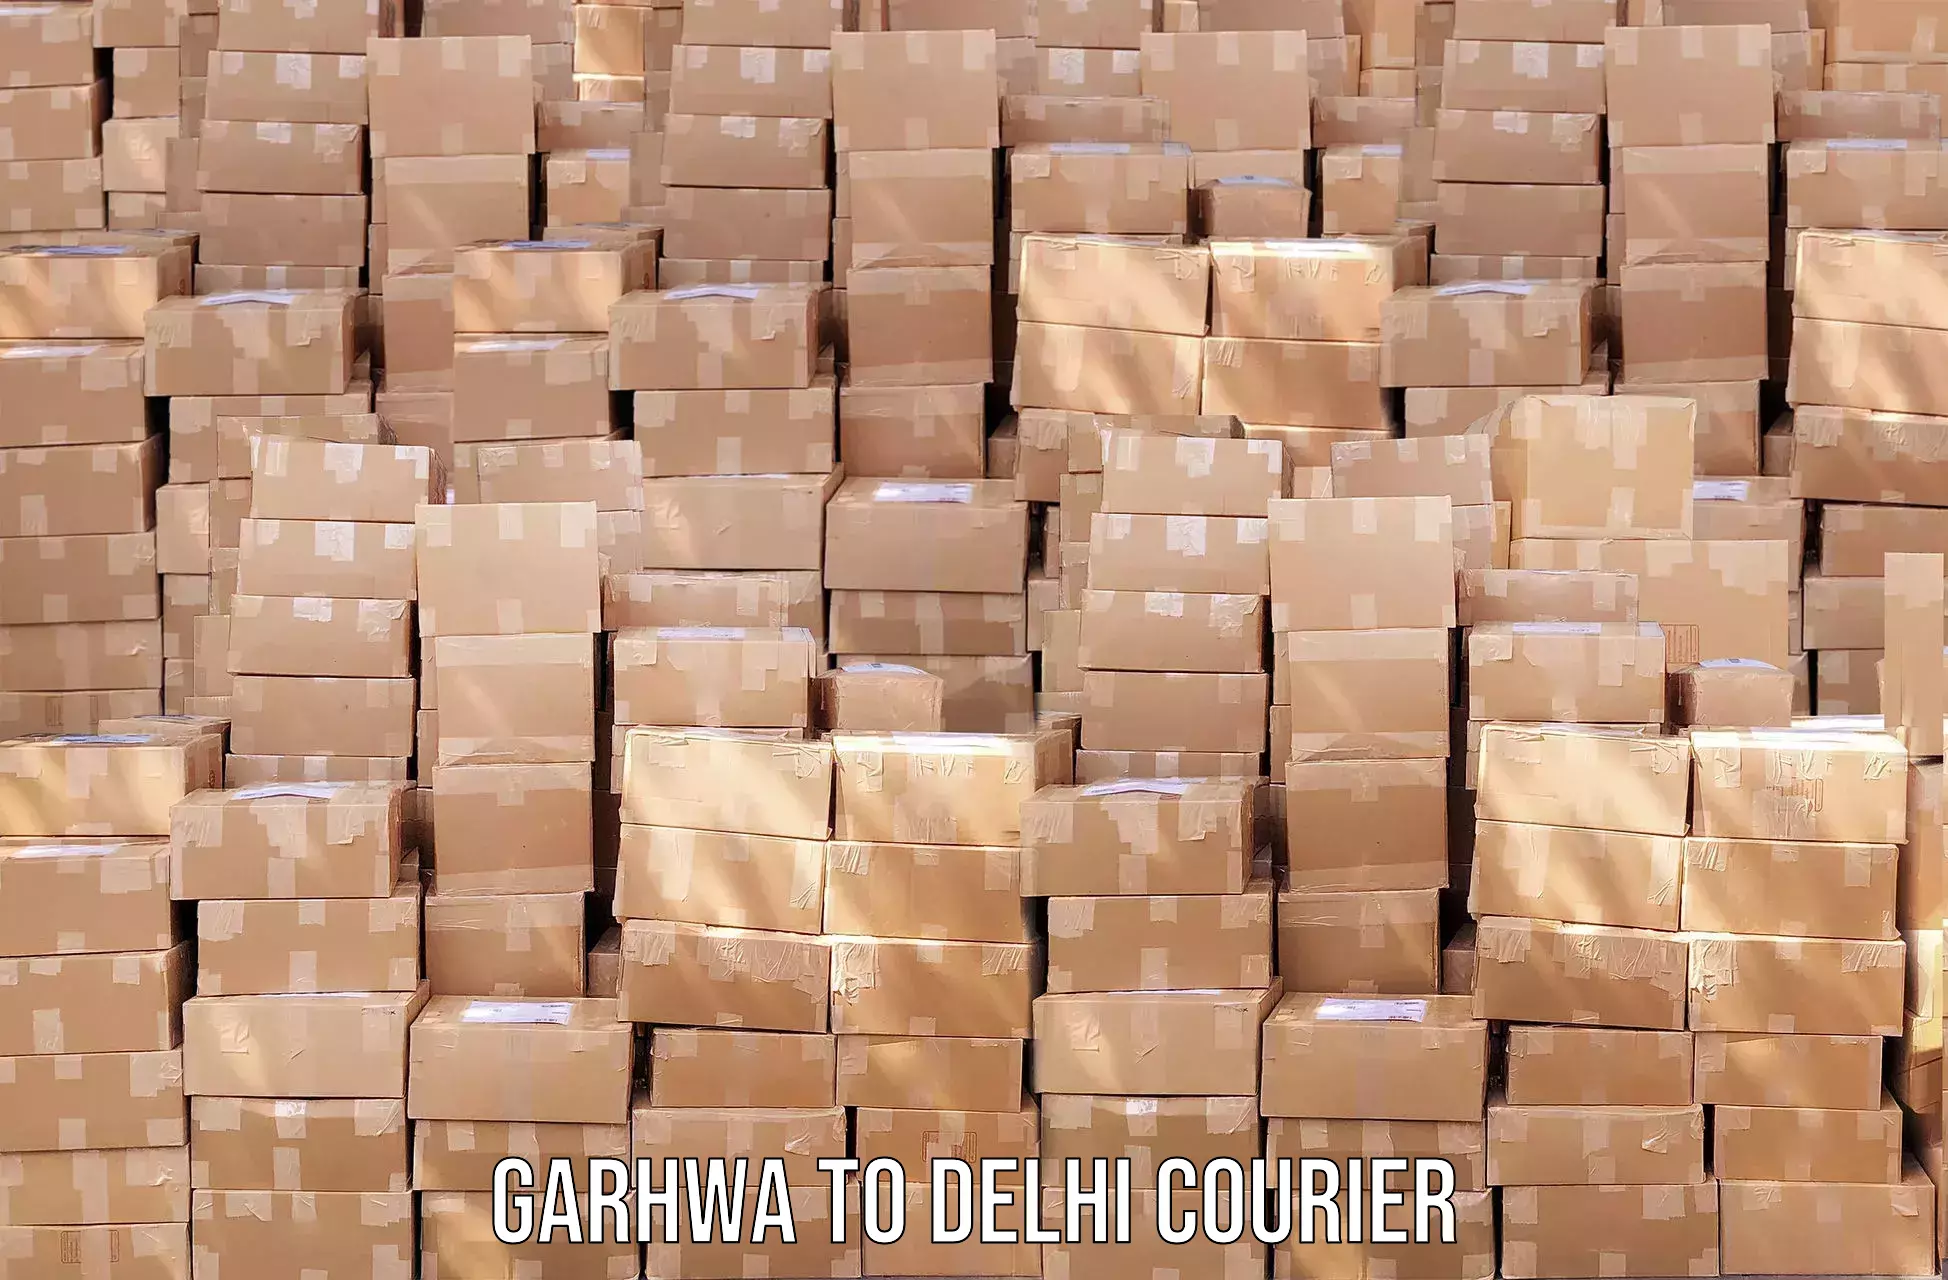 User-friendly courier app Garhwa to Delhi